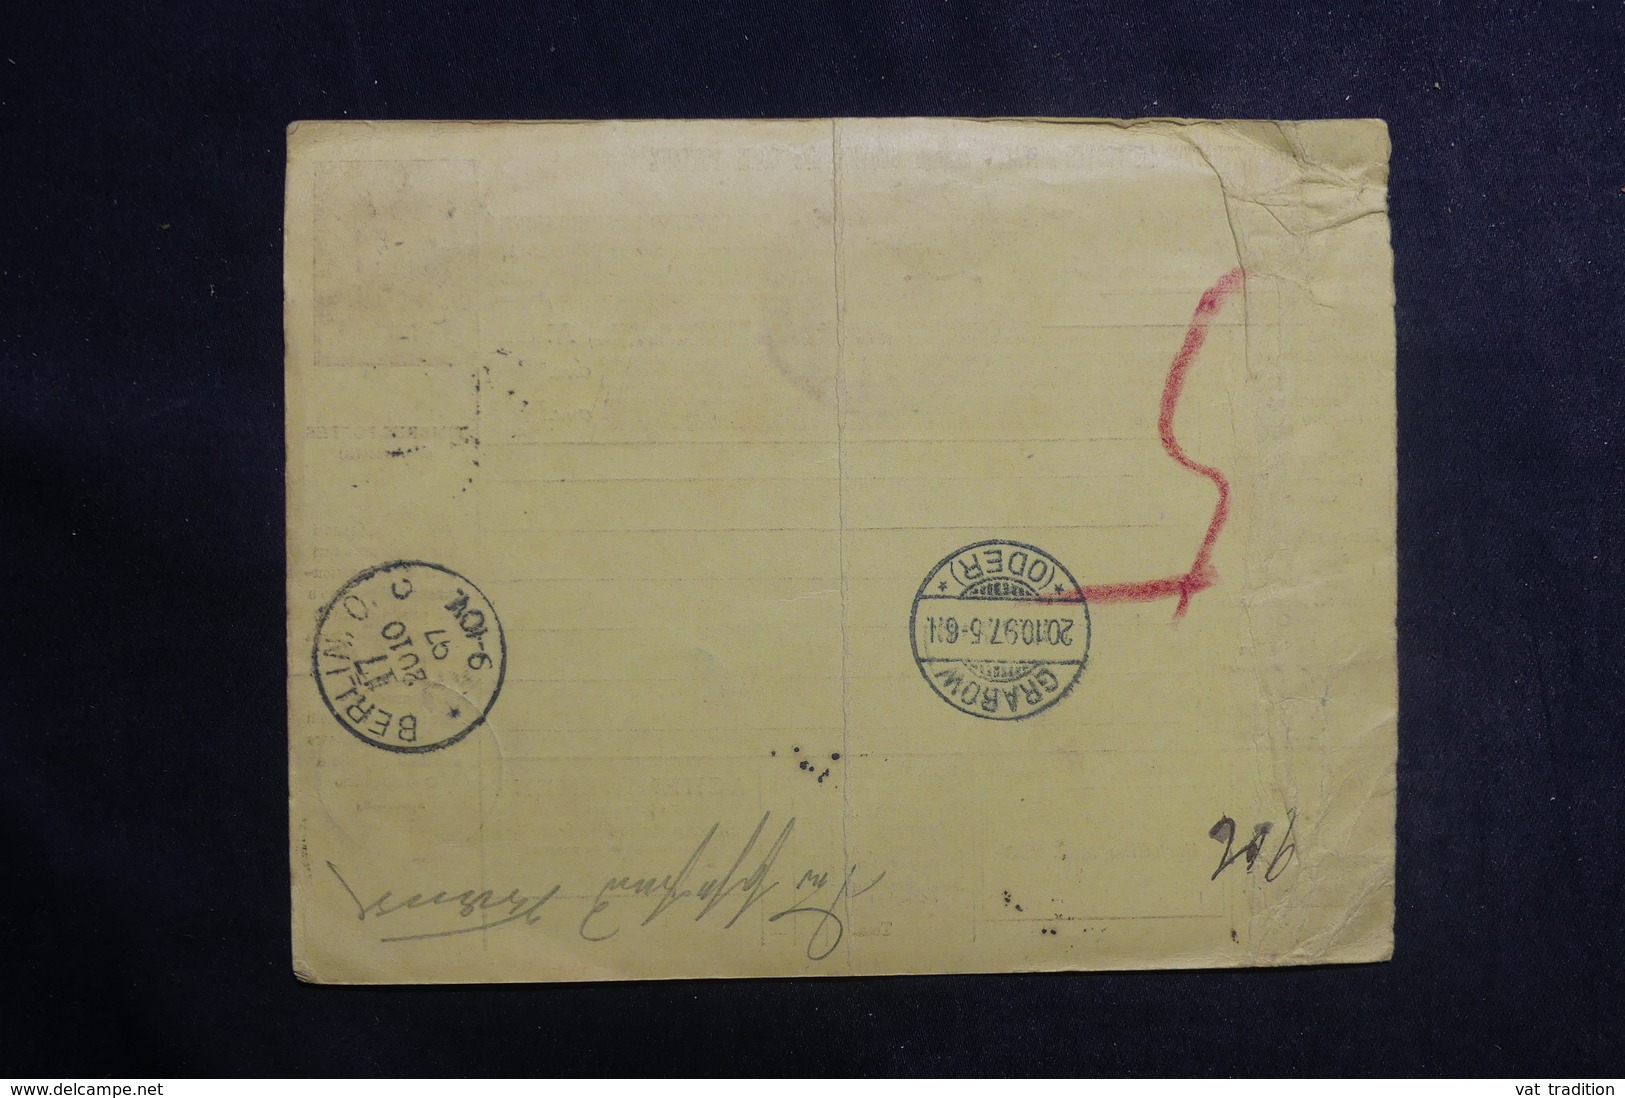 ITALIE - Bulletin De Colis Postal De Napoli Pour L' Allemagne En 1897 - L 41140 - Colis-postaux